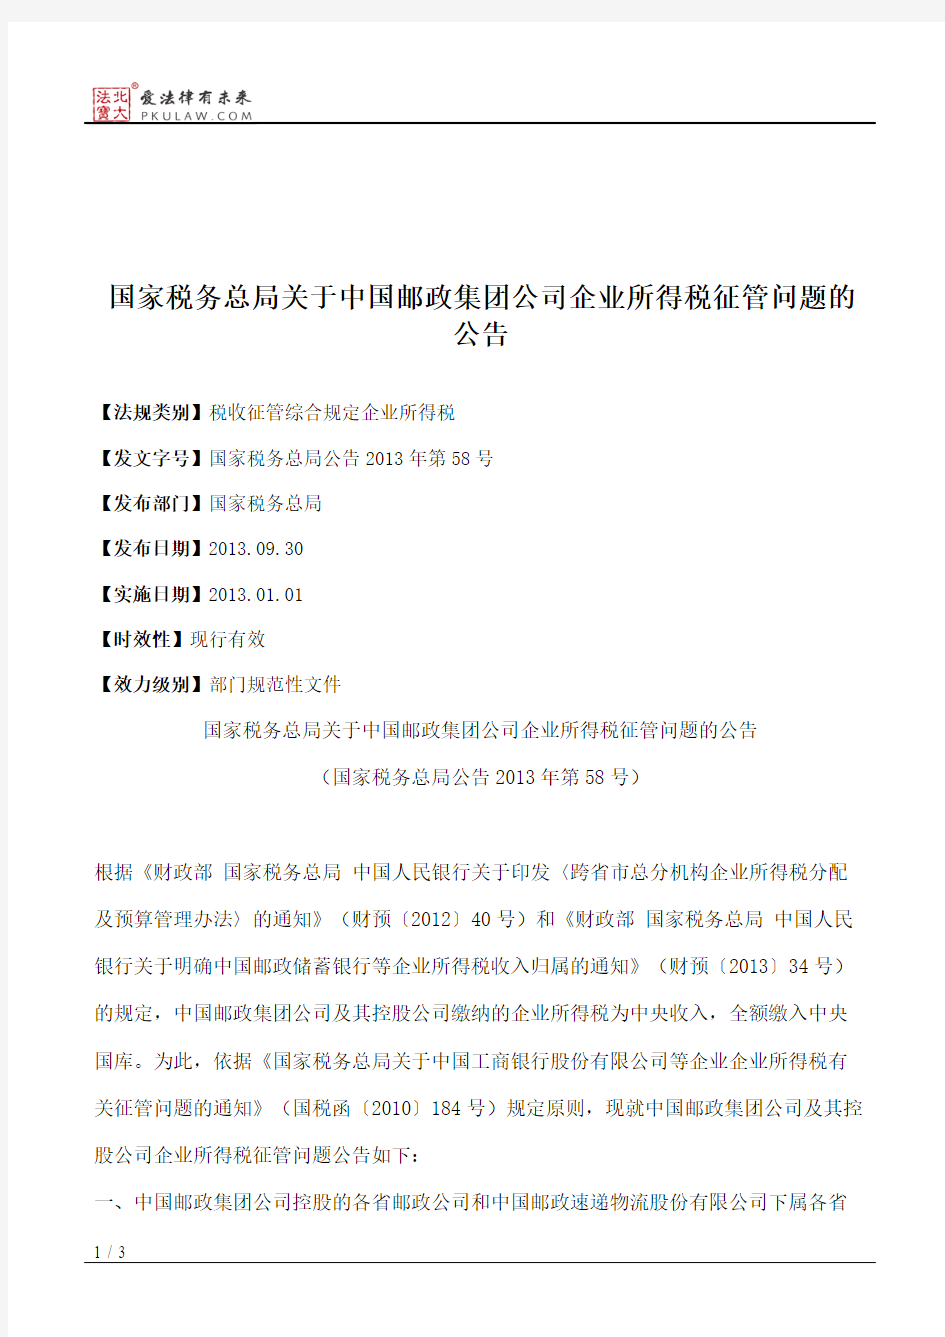 国家税务总局关于中国邮政集团公司企业所得税征管问题的公告